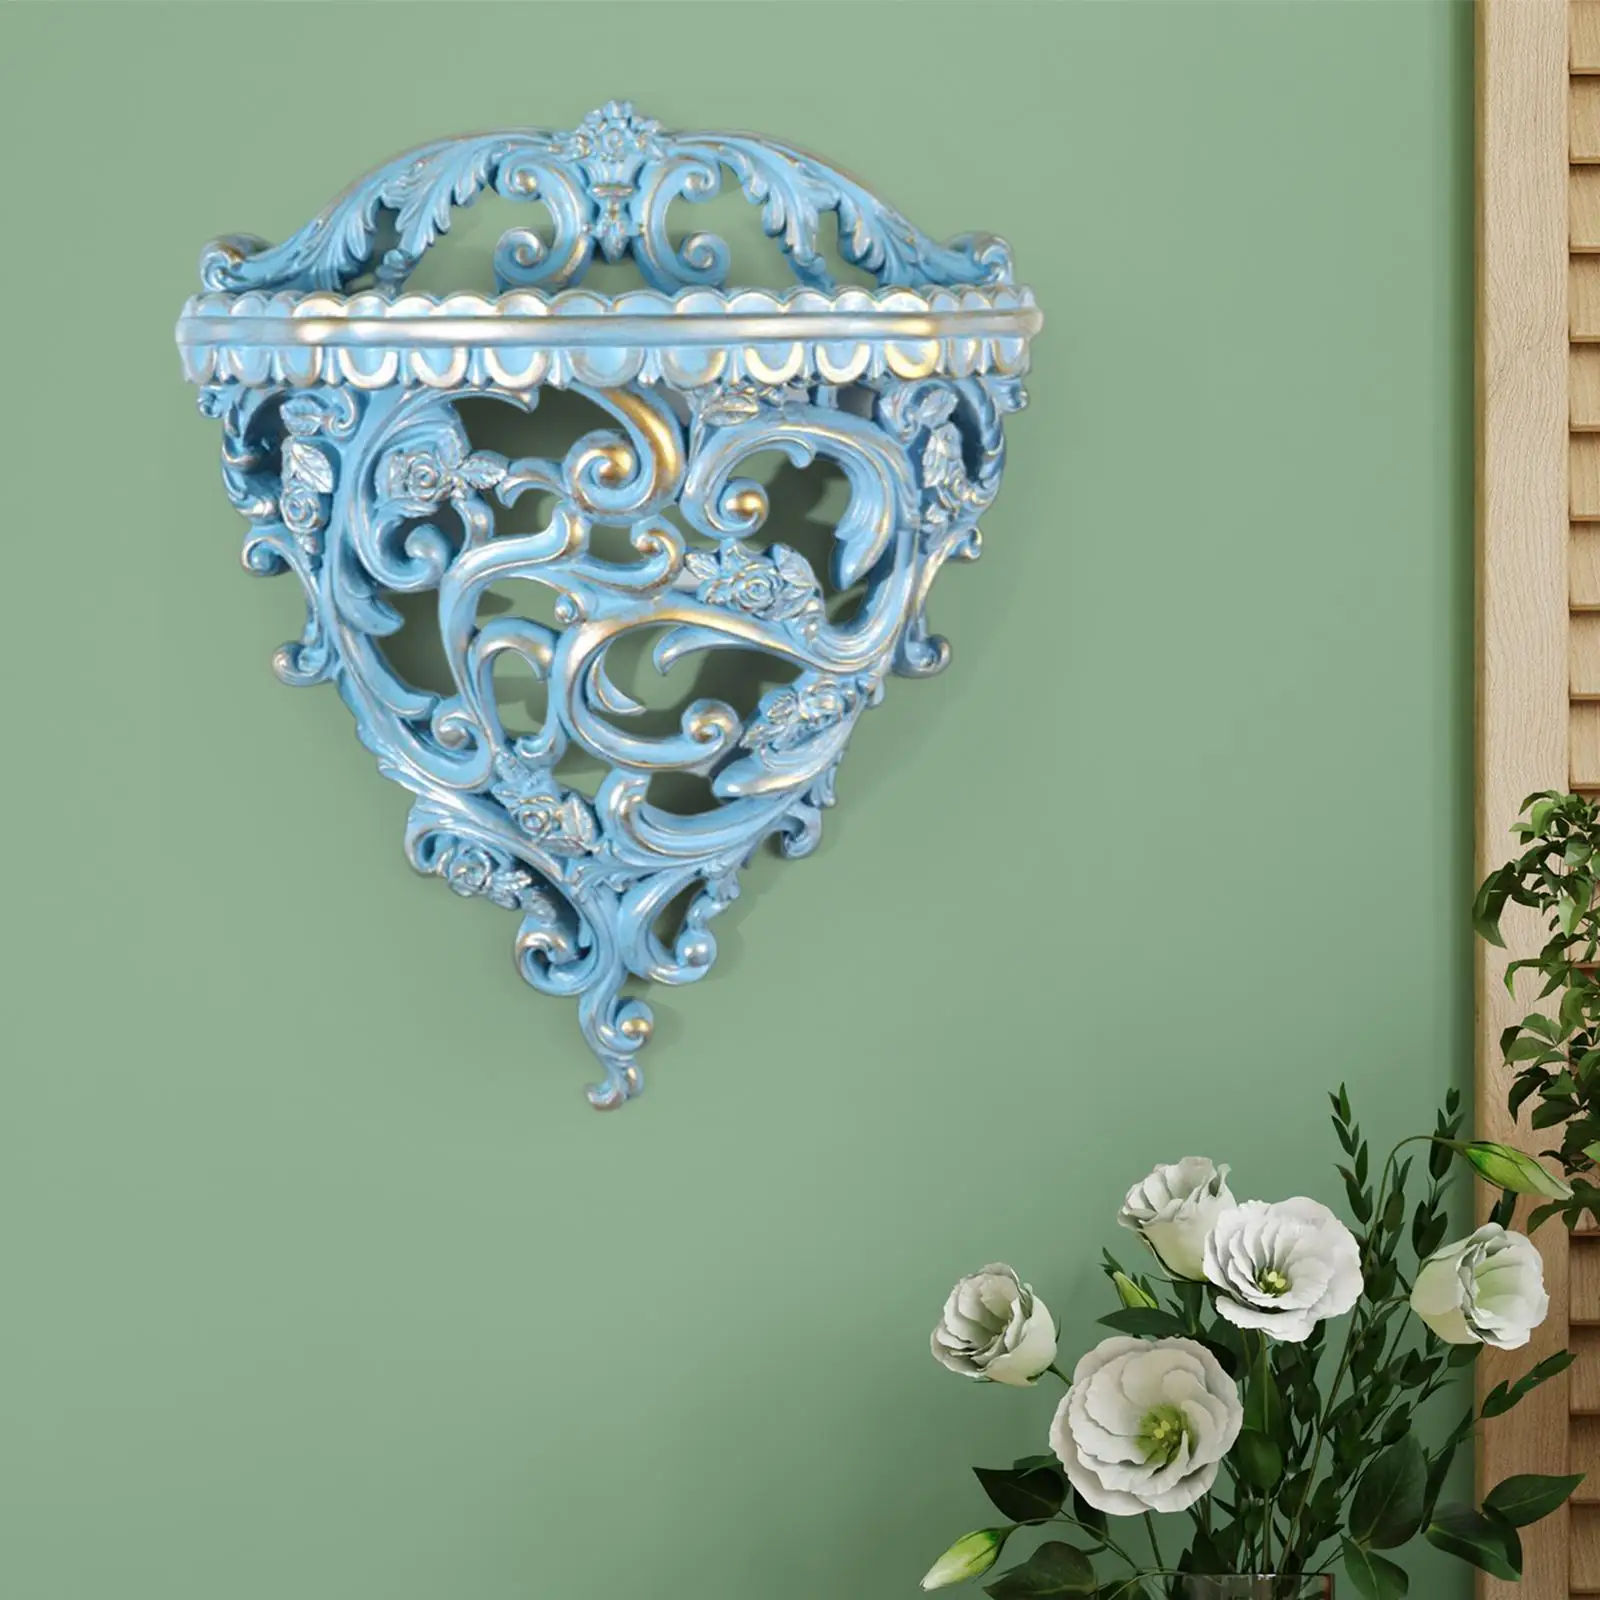 Floating Shelves Flower Pot Stand Holder Centerpiece Decoration for Bedroom